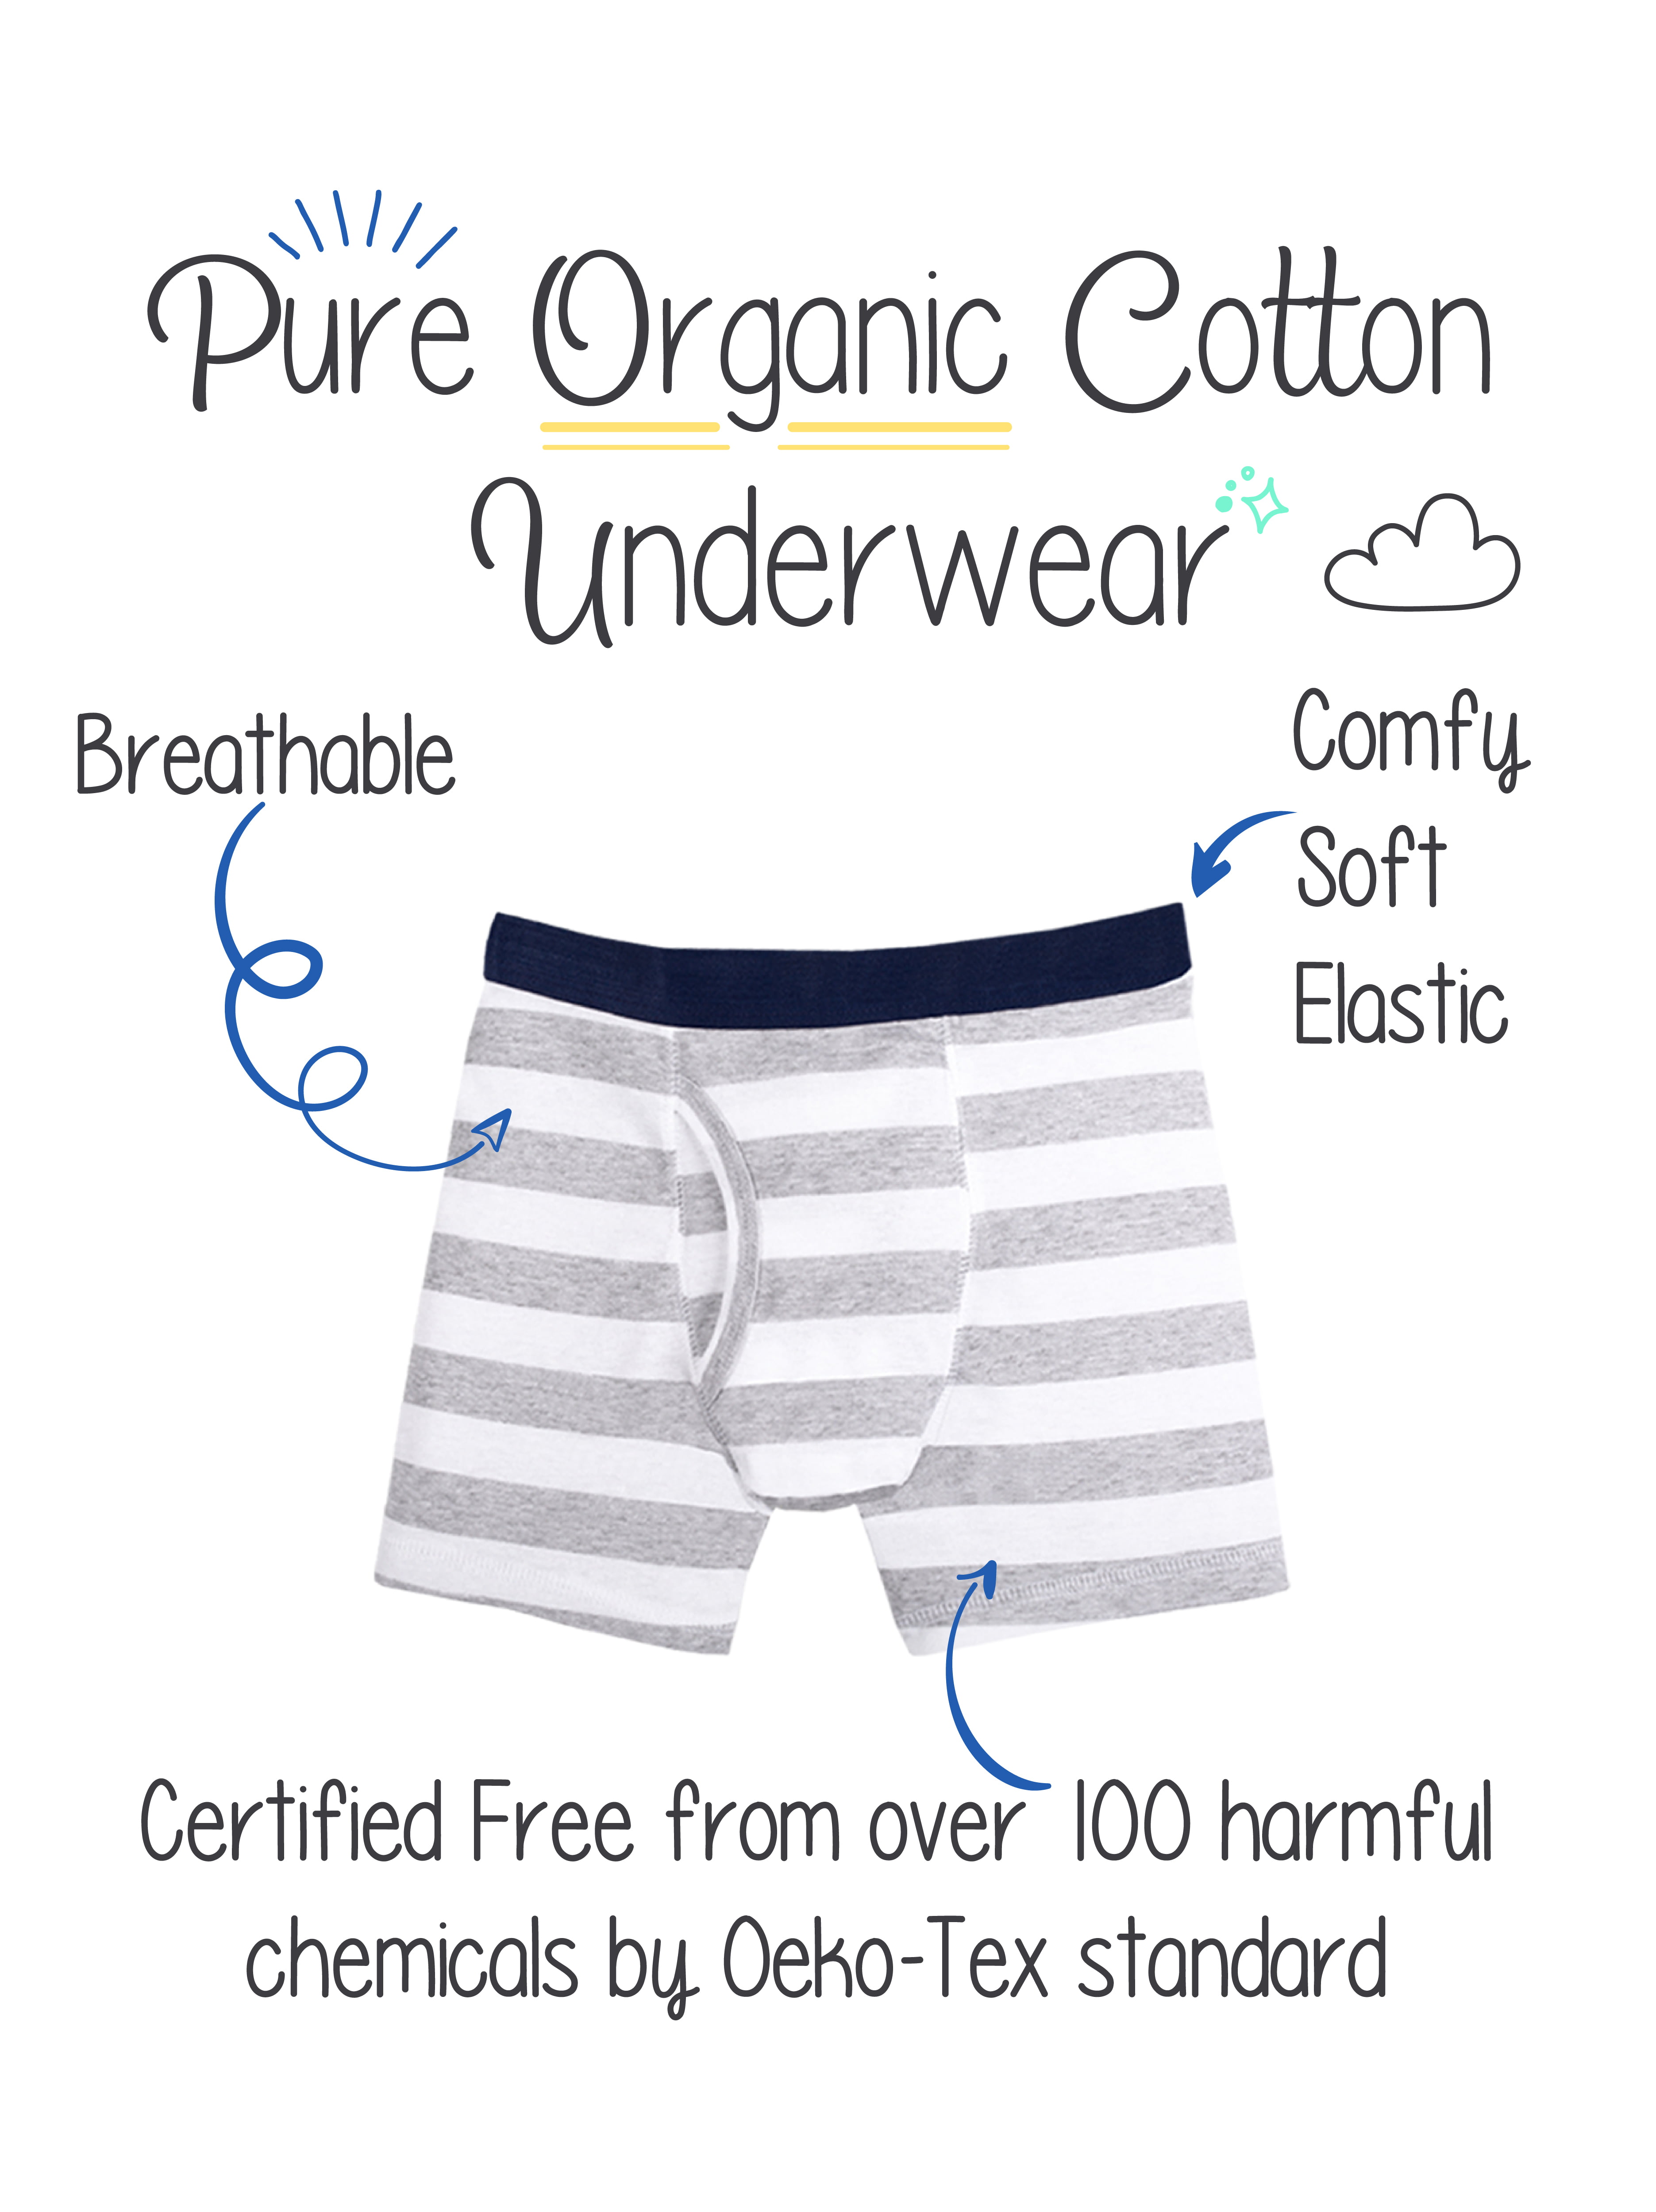 Little Star Organic Boys Boxer Briefs Underwear, 7Pk, Size 6-20 